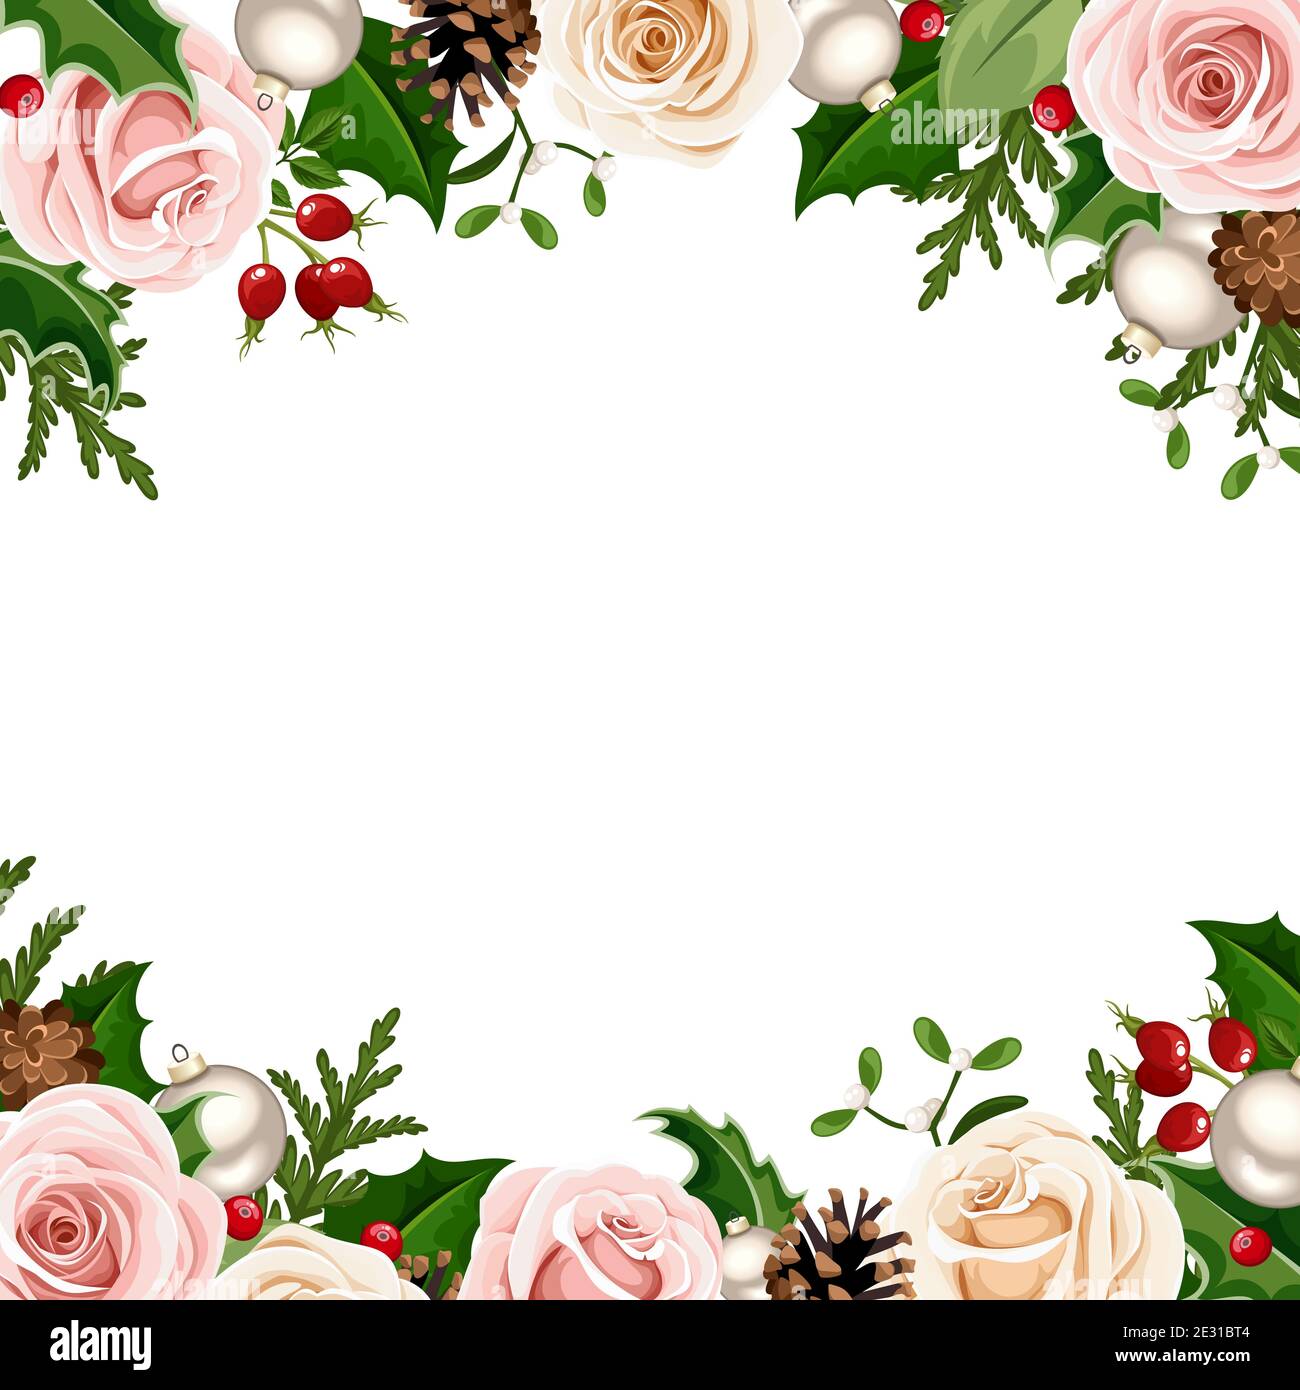 Marco de fondo vectorial de Navidad con rosas rosadas, blancas y verdes, bolas, acebo, conos y ramas de abeto. Ilustración del Vector